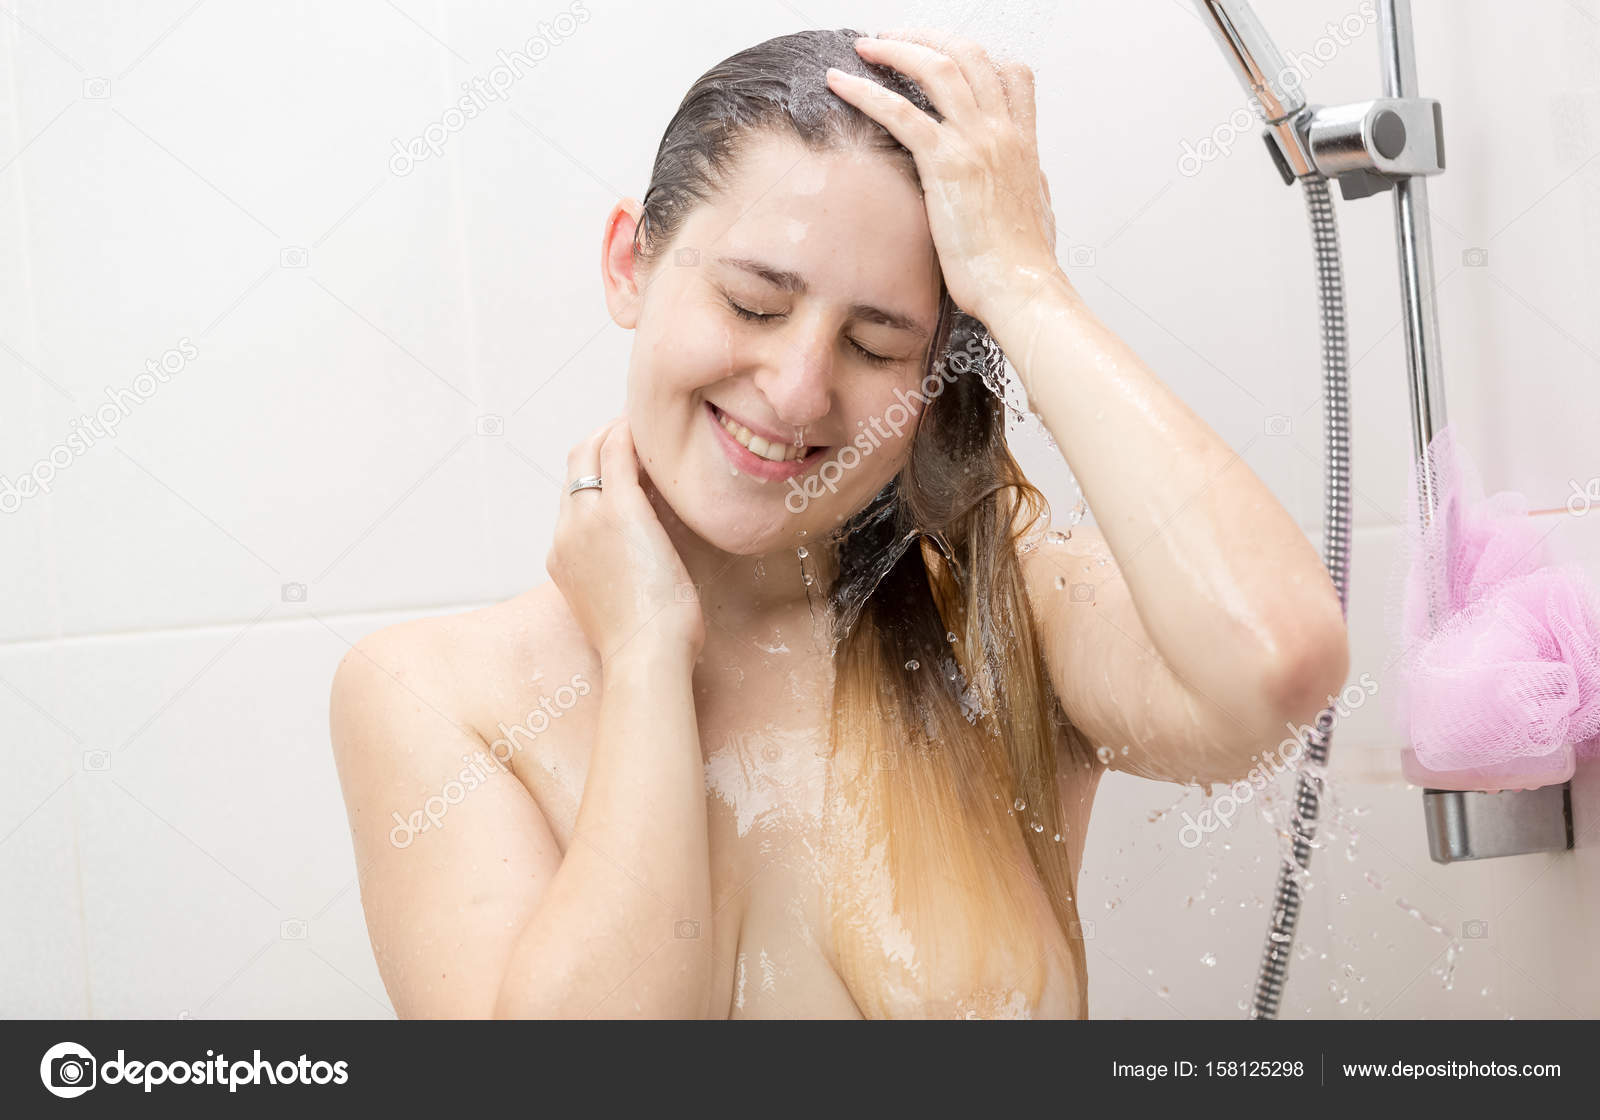 Девушка моется в душе и мастурбирует напором воды